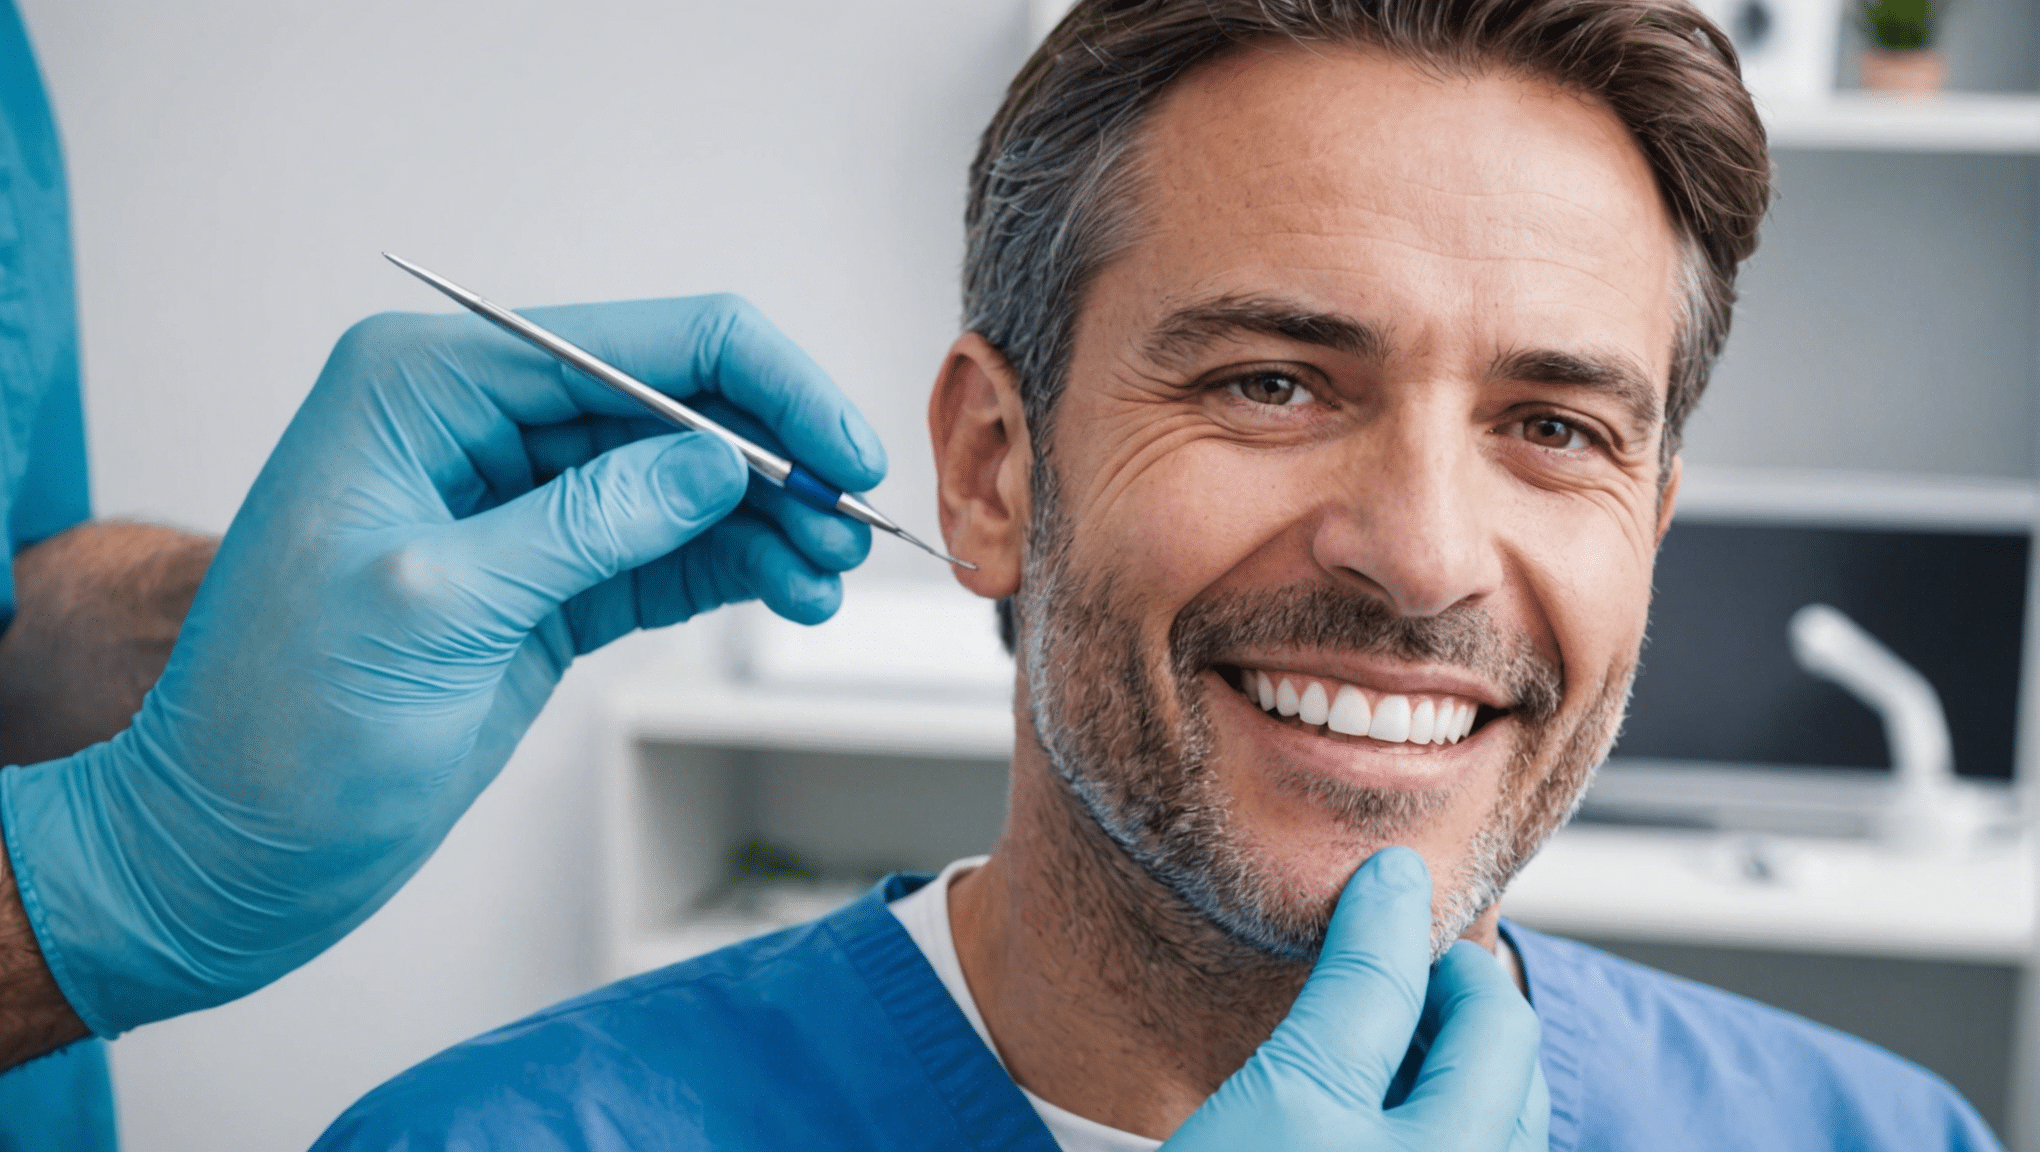 découvrez nos conseils pour préserver votre santé dentaire et maintenir un sourire éclatant. trouvez des astuces pratiques pour une hygiène bucco-dentaire optimale.